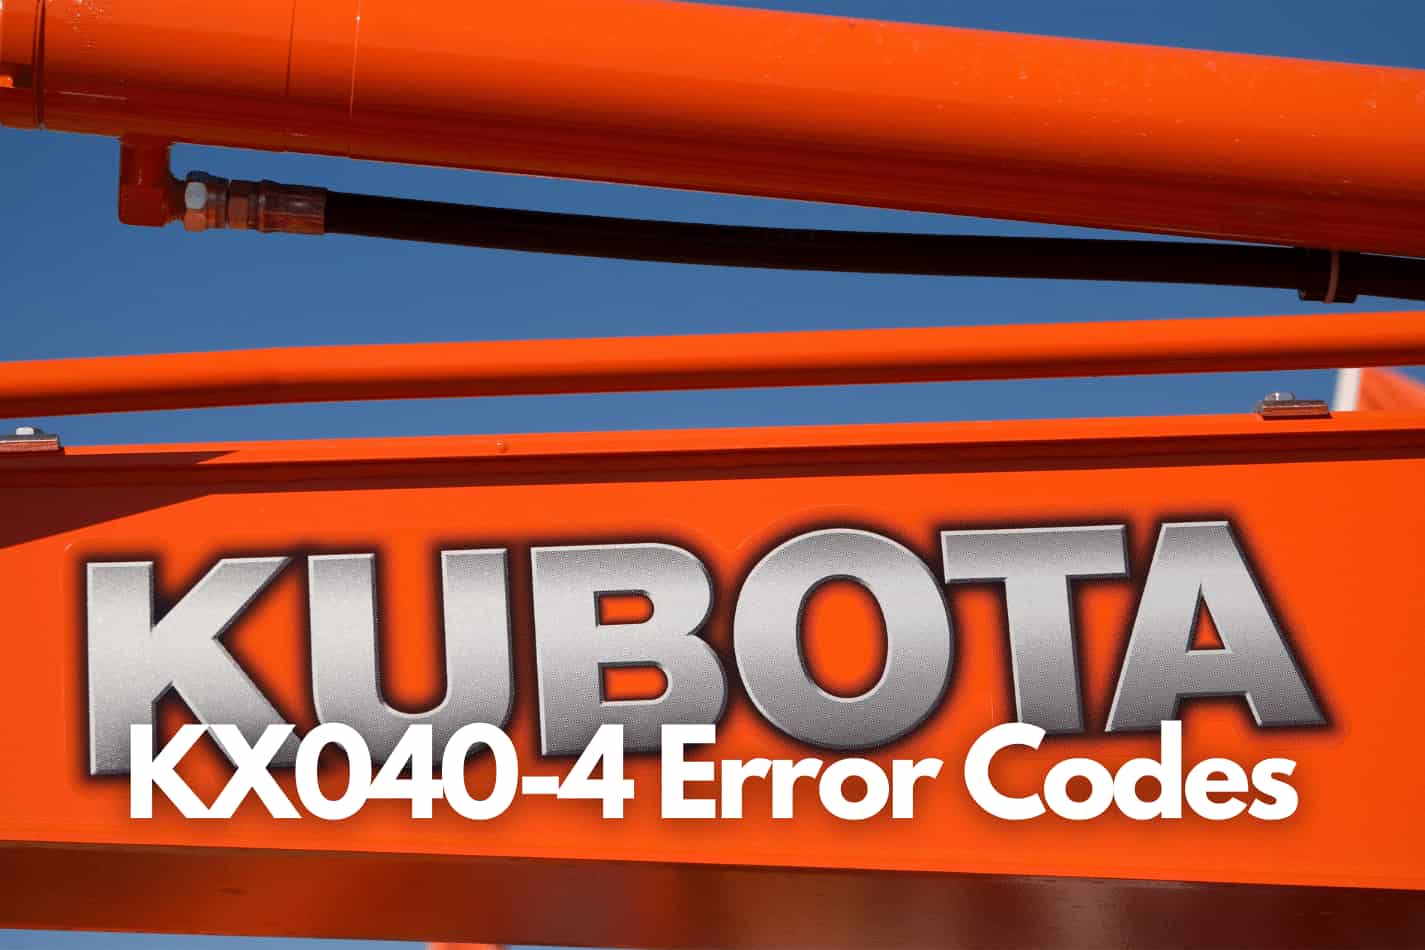 Kubota KX040-4 Error Codes and Warning Lights